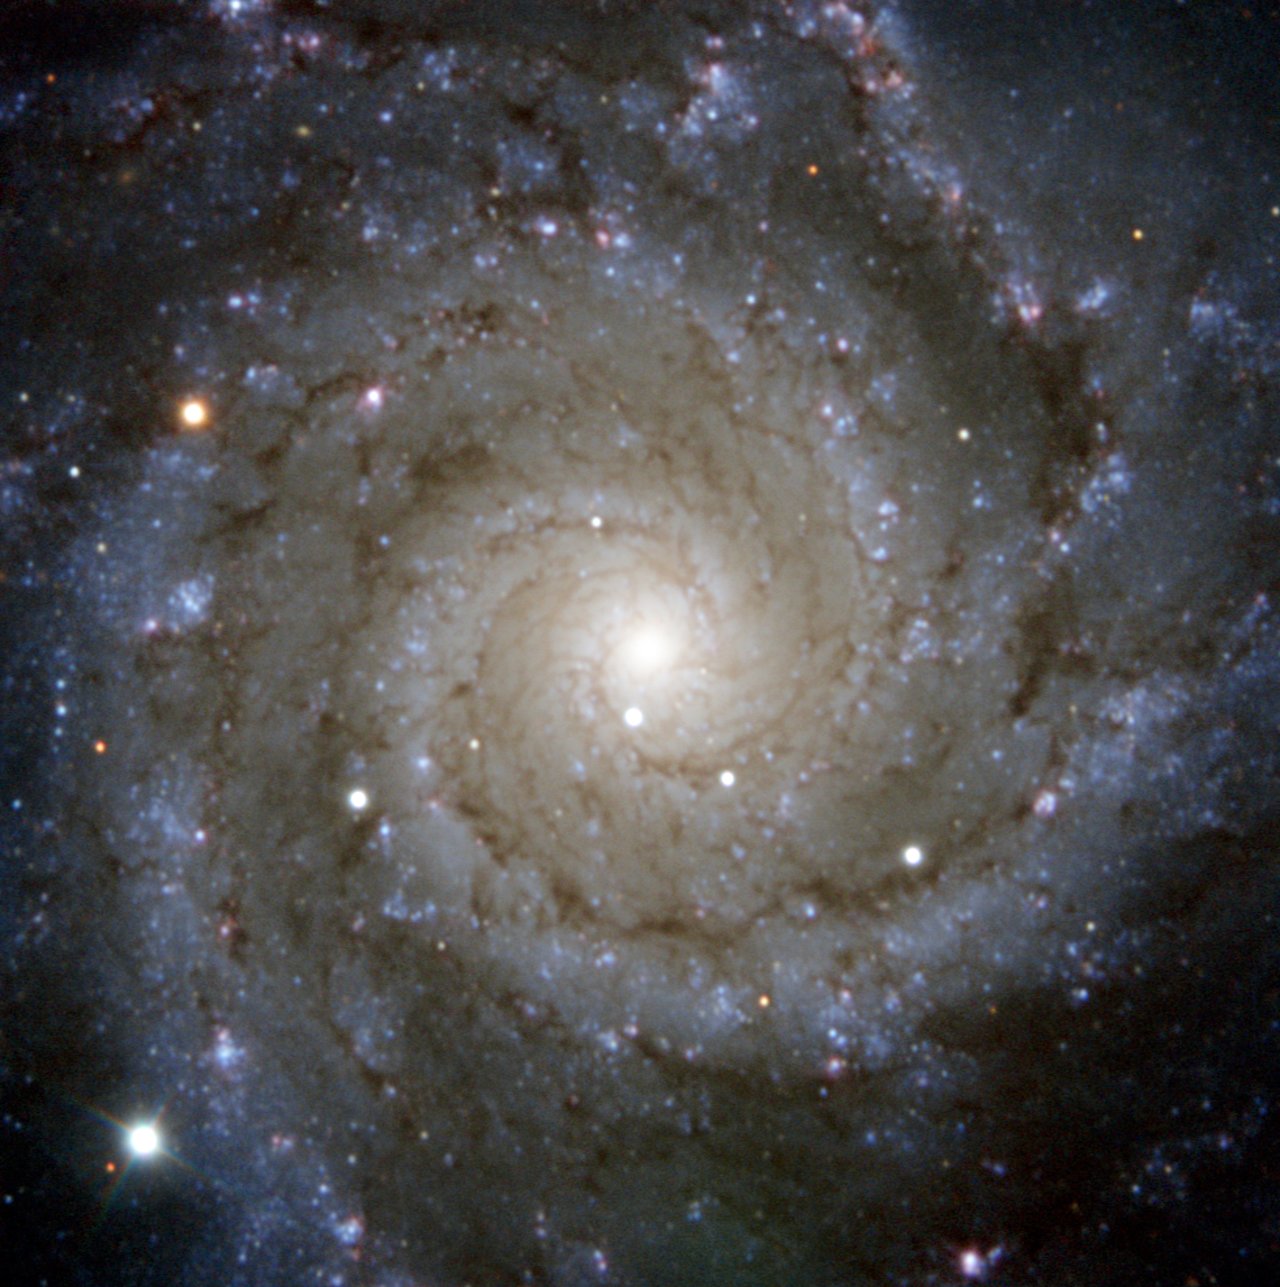 El sondeo PESSTO de ESO capturó esta vista de Messier 74, una impresionante galaxia espiral con brazos giratorios bien definidos. 